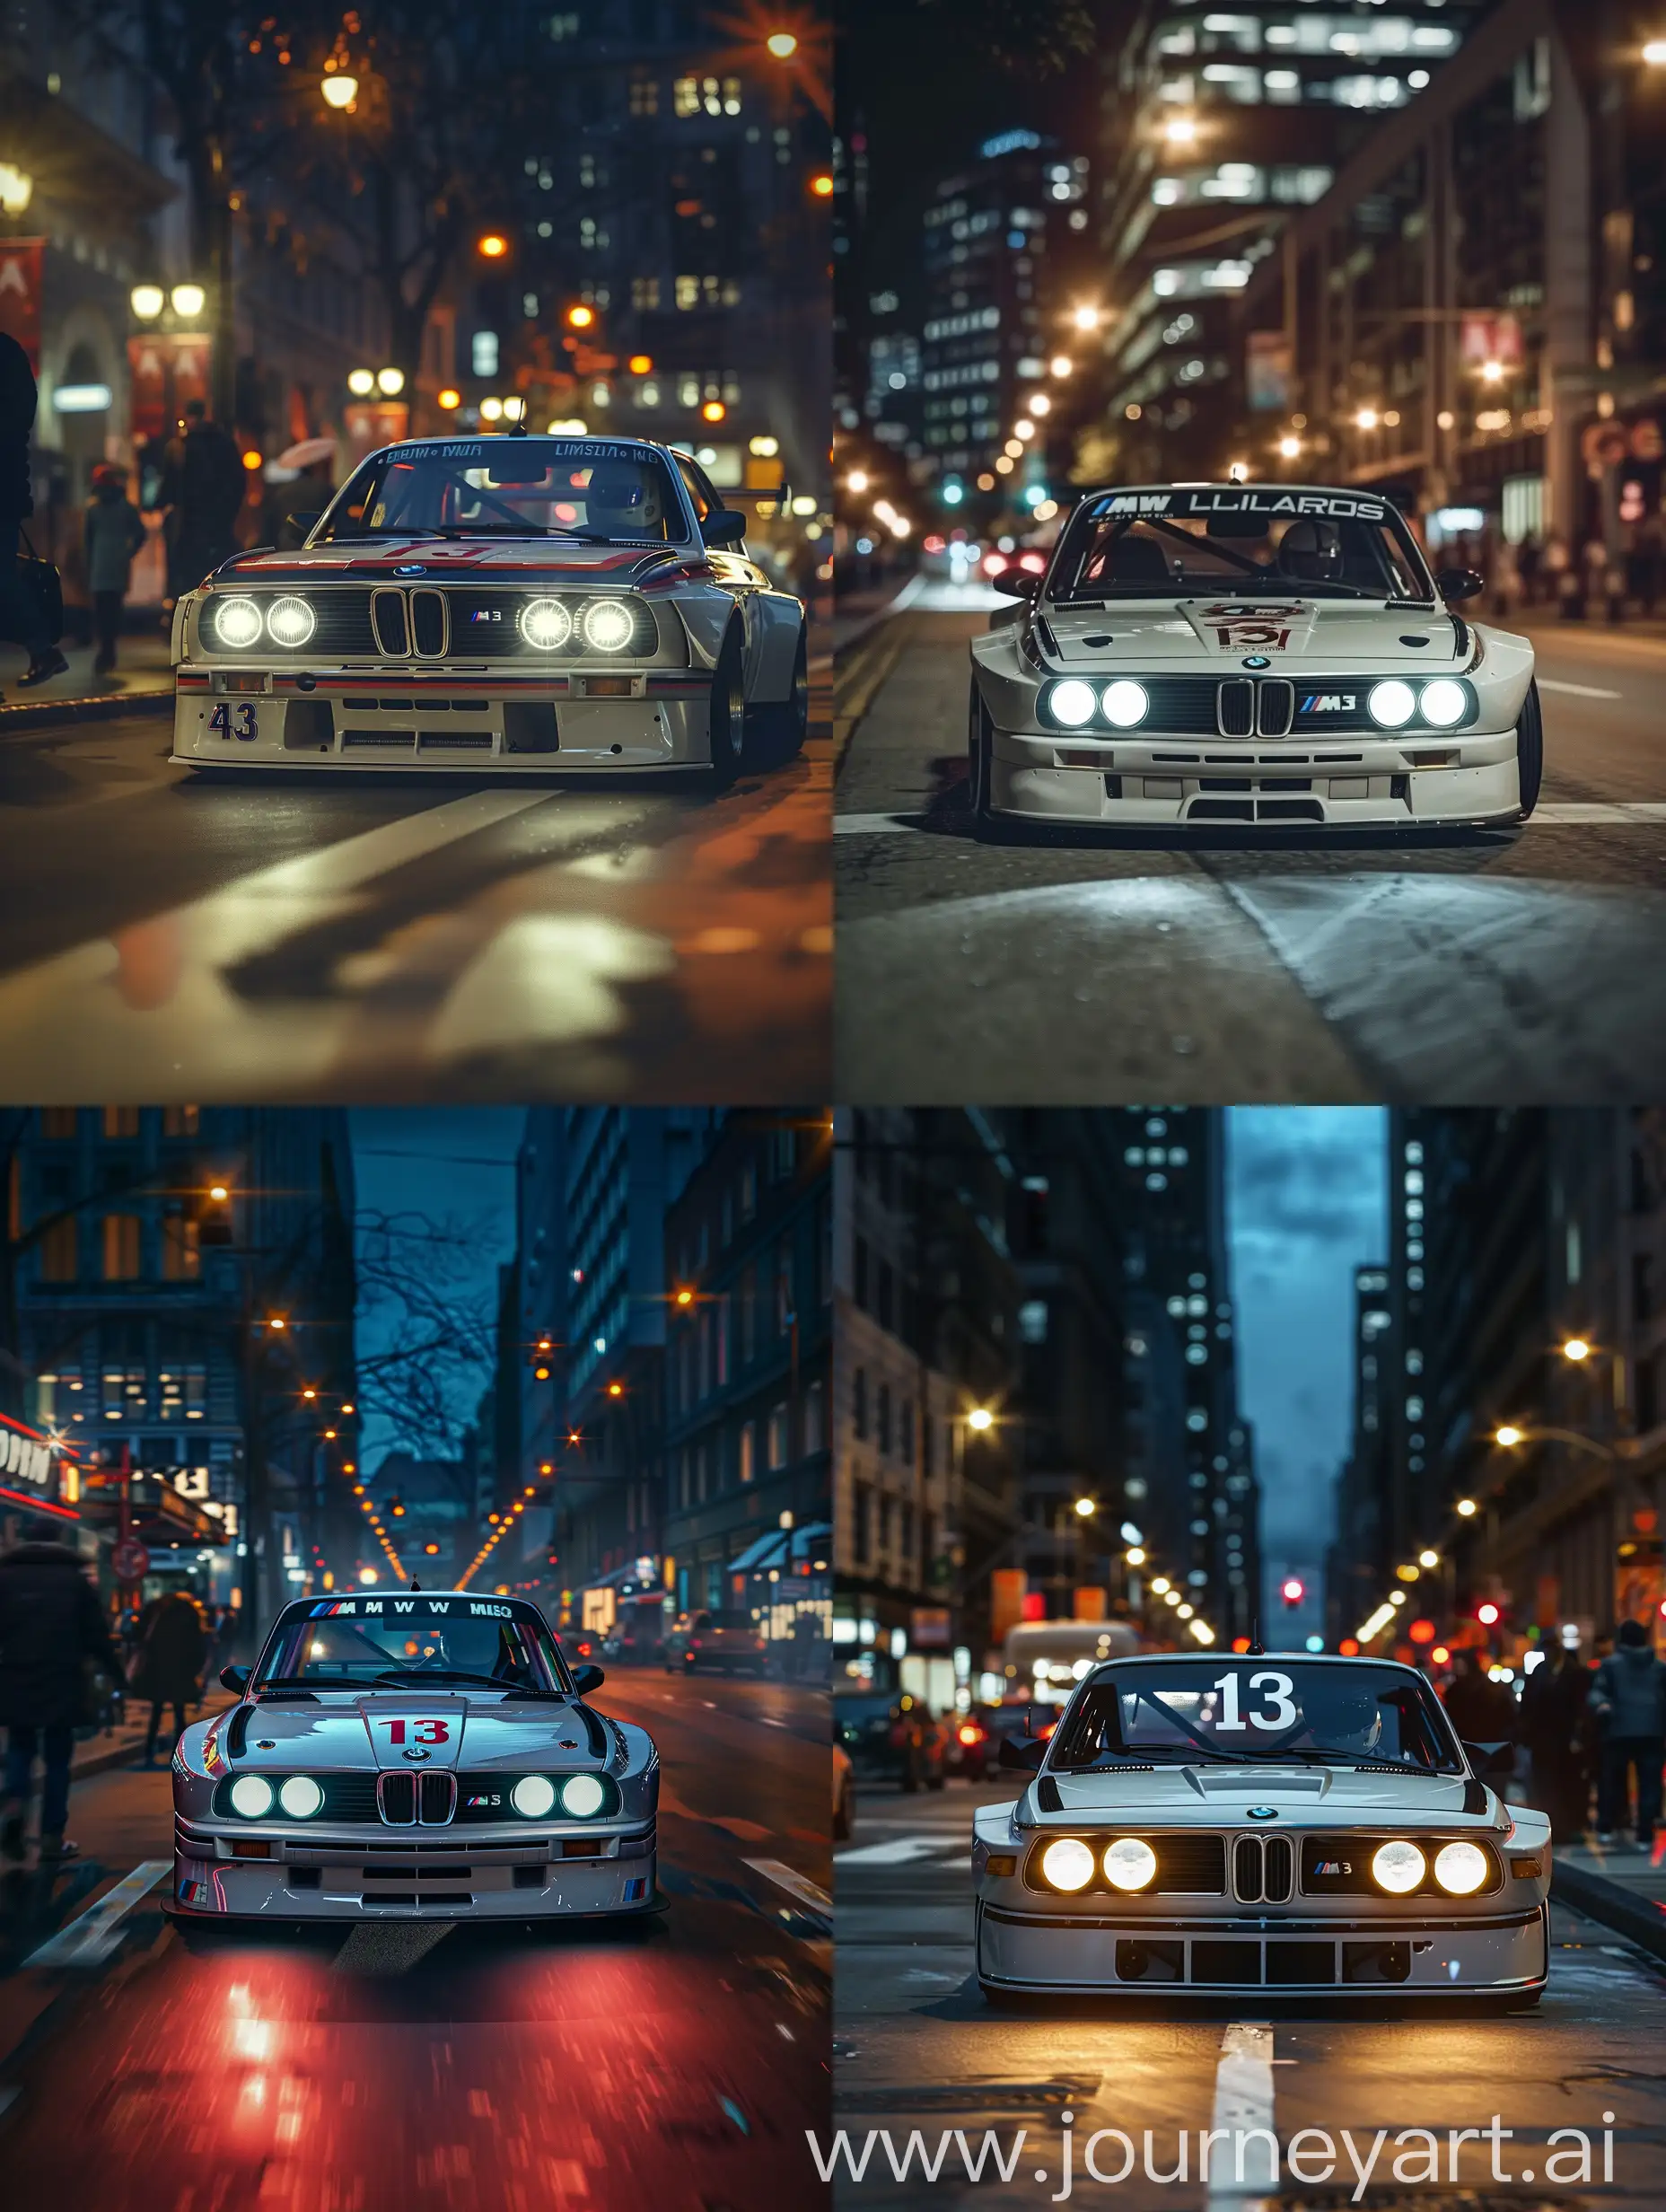 На фоне ночного городского пейзажа, подсвеченного яркими фарами, мощный BMW M3 GTR мчится по улицам. Его агрессивный дизайн и спортивные линии привлекают взгляды прохожих. На капоте виднеется символический номер 13, который стал знаком узнаваемости этой легендарной машины. Скорость и адреналин пронизывают воздух, а звук мотора напоминает о бескомпромиссной гонке на выживание., 4k, высокое разрешение, высокая детализация